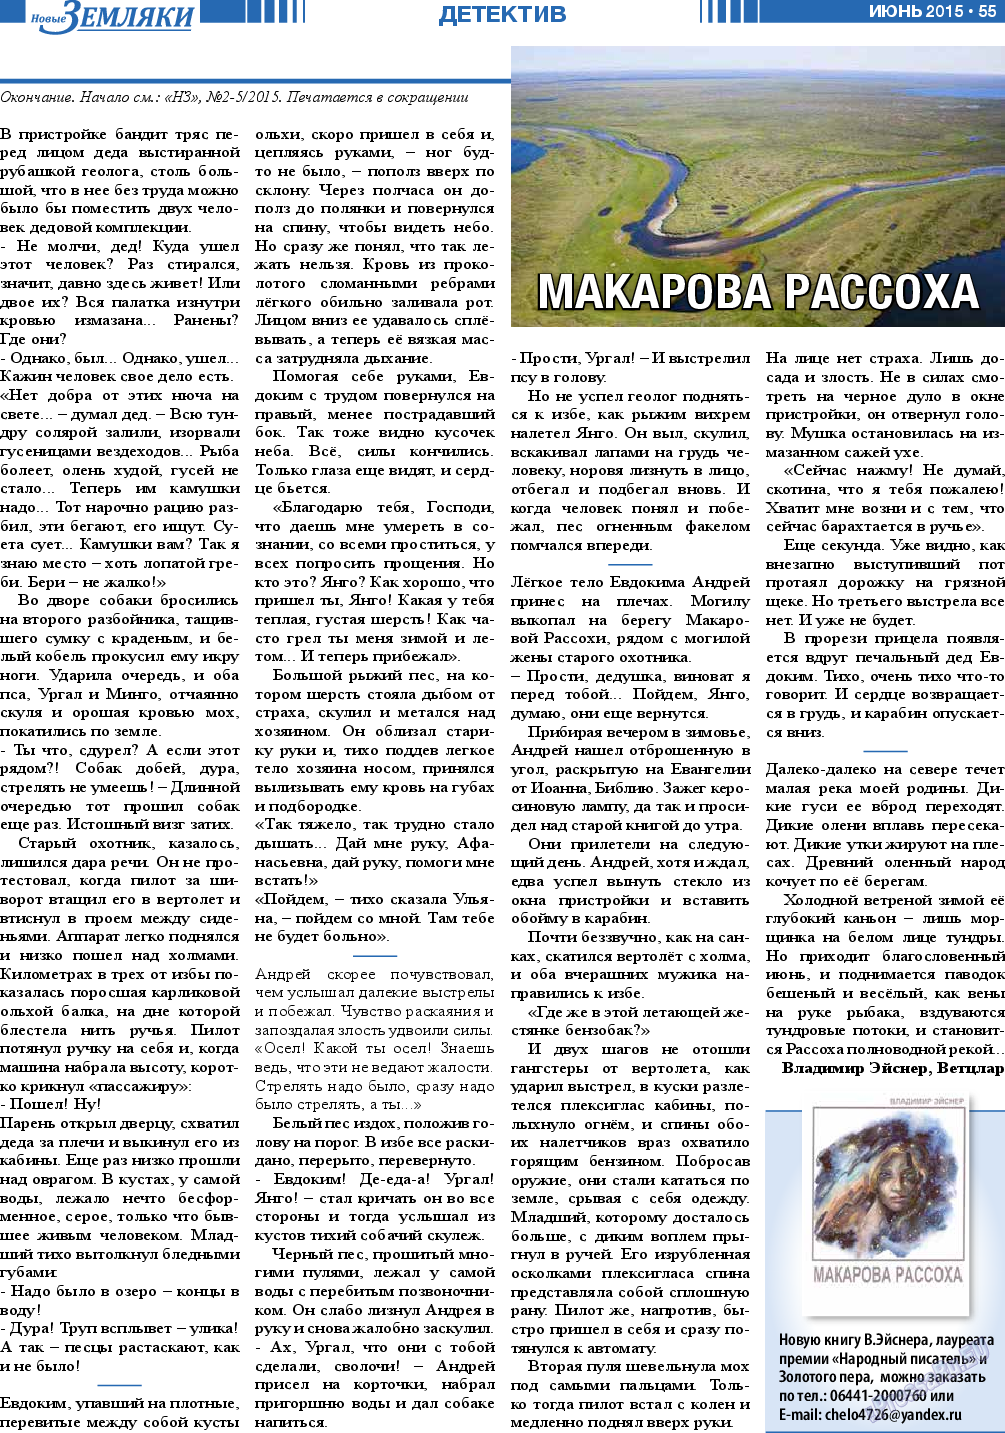 Новые Земляки (газета). 2015 год, номер 6, стр. 55